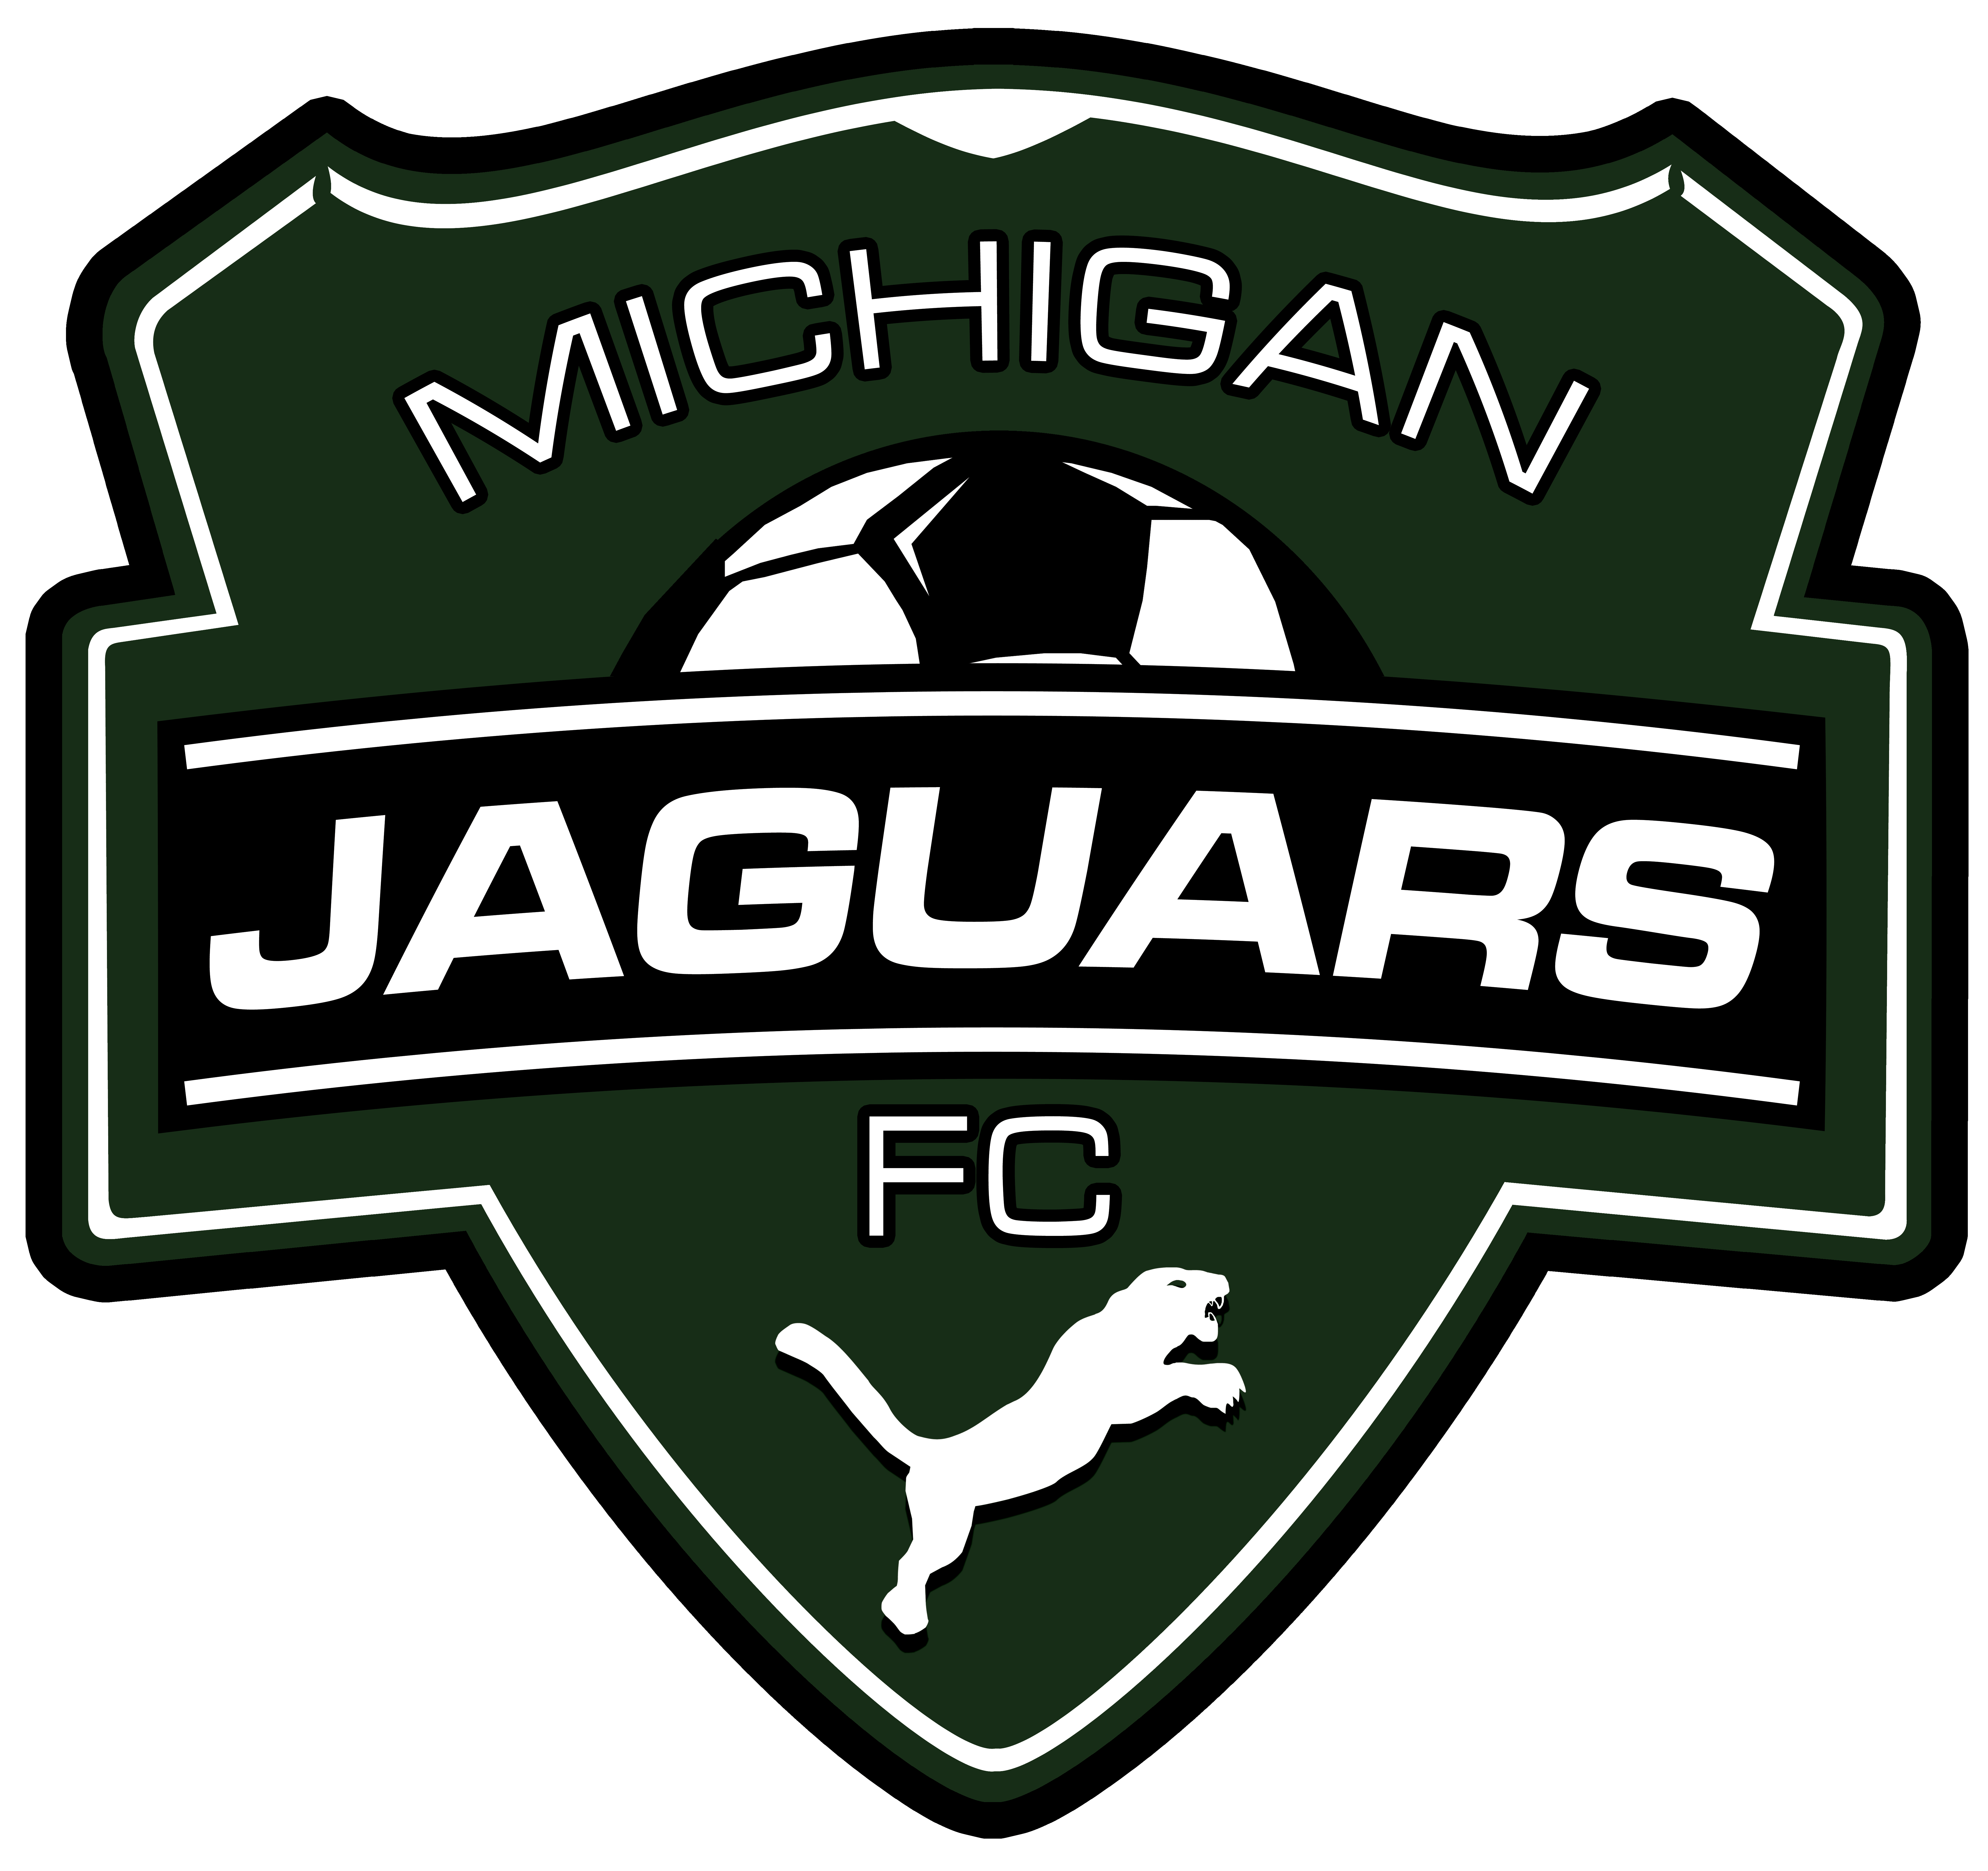 Michigan Jaguars team badge